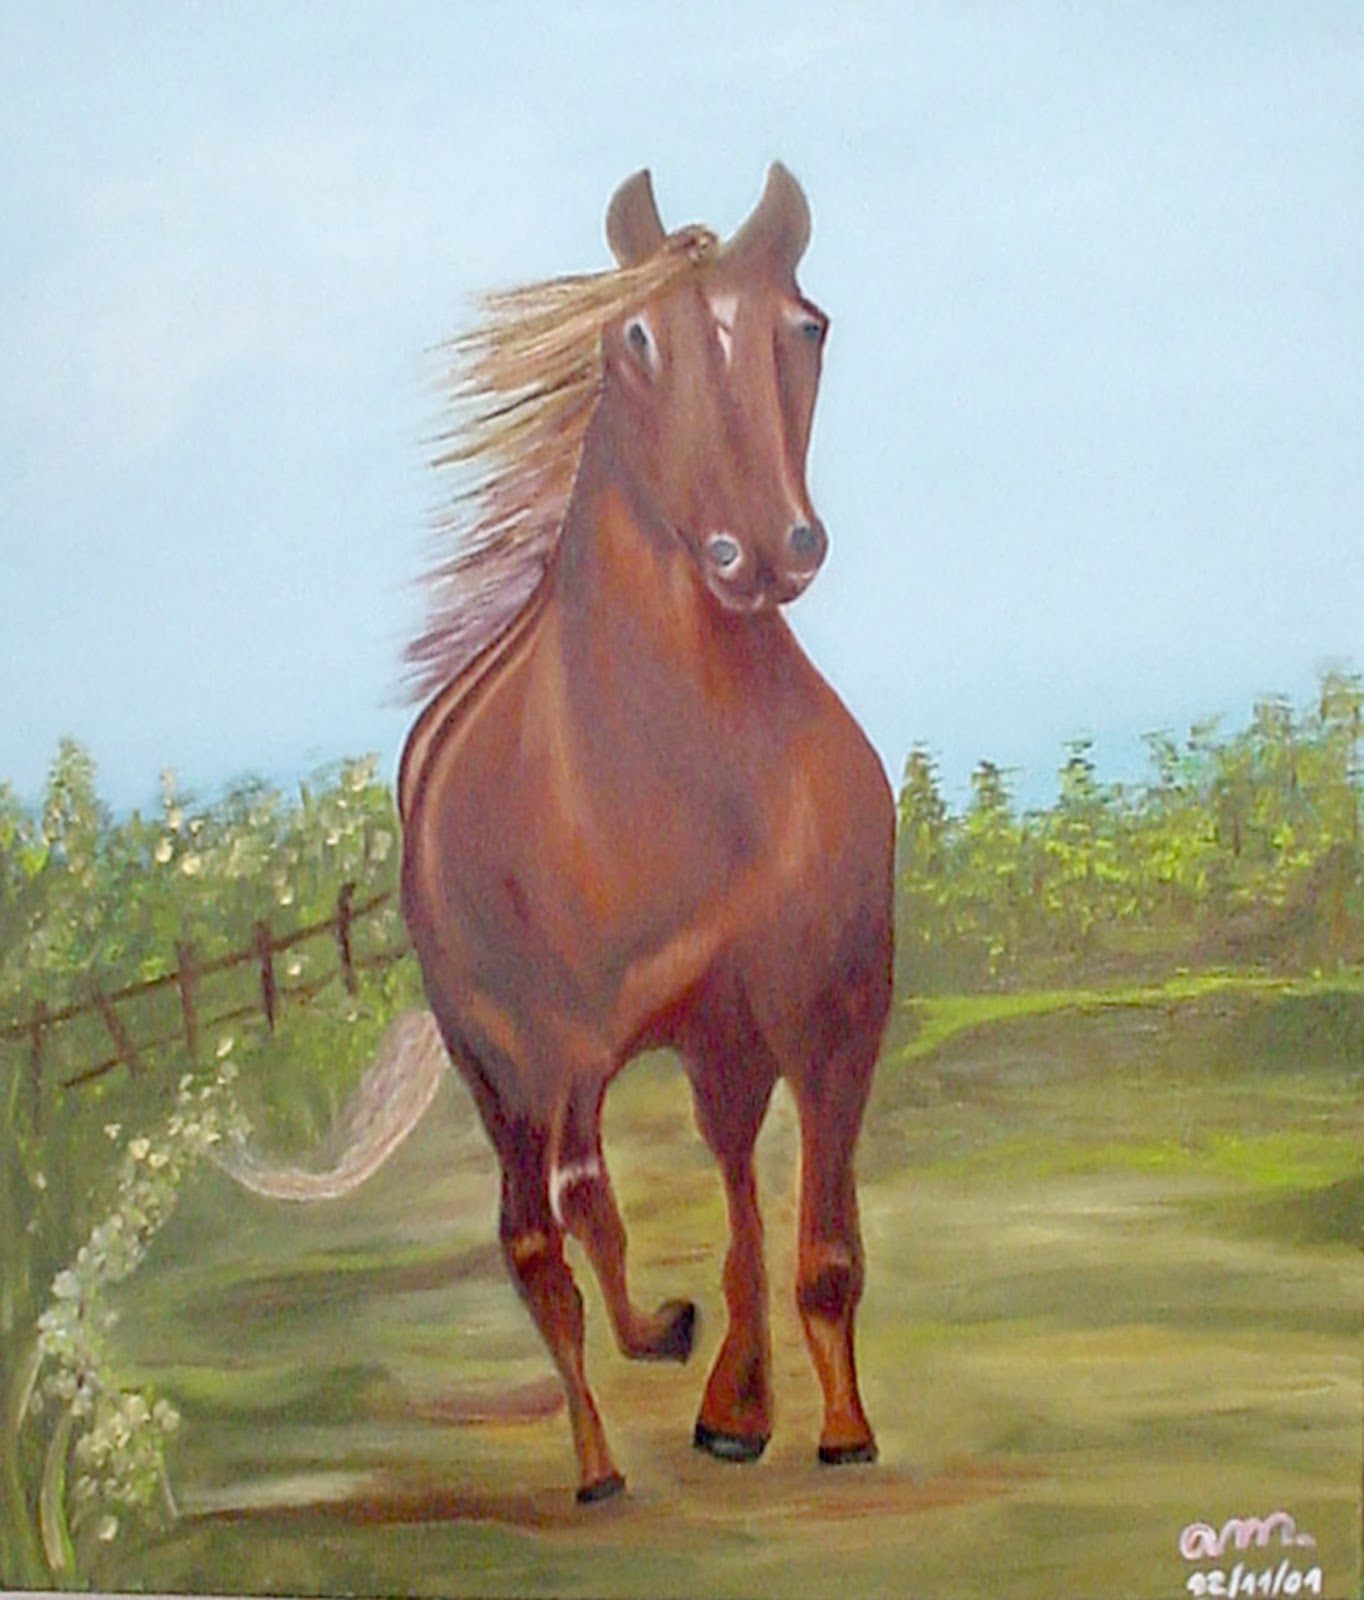 Joe cavalo